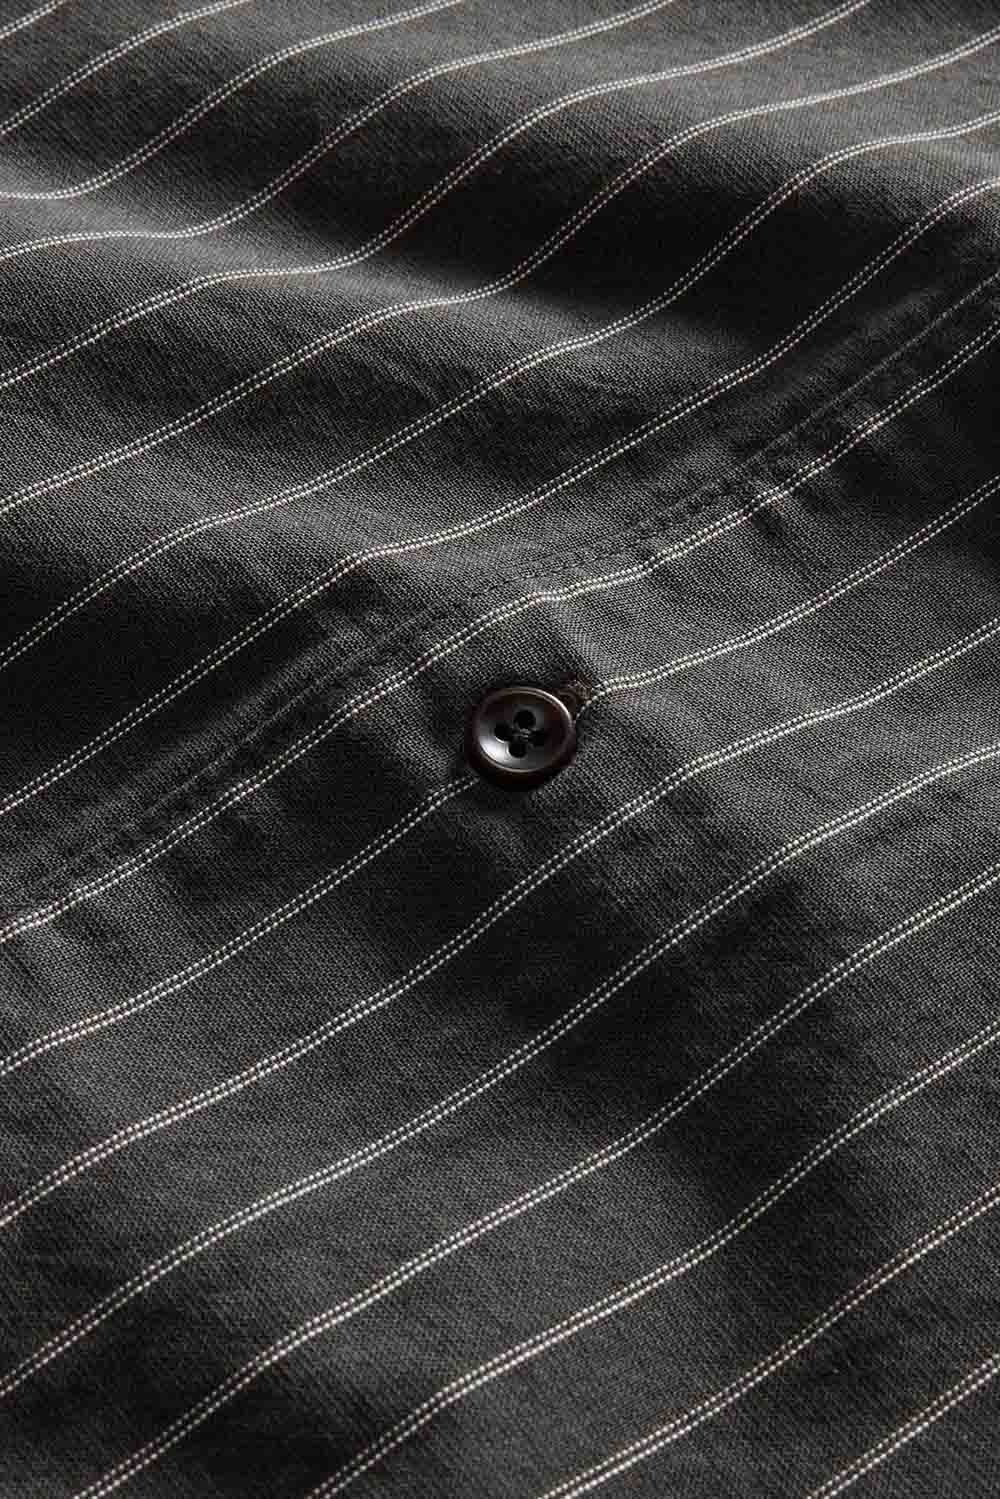 Taylor Stitch - The Davis SS - Kelp Stripe  - Detail